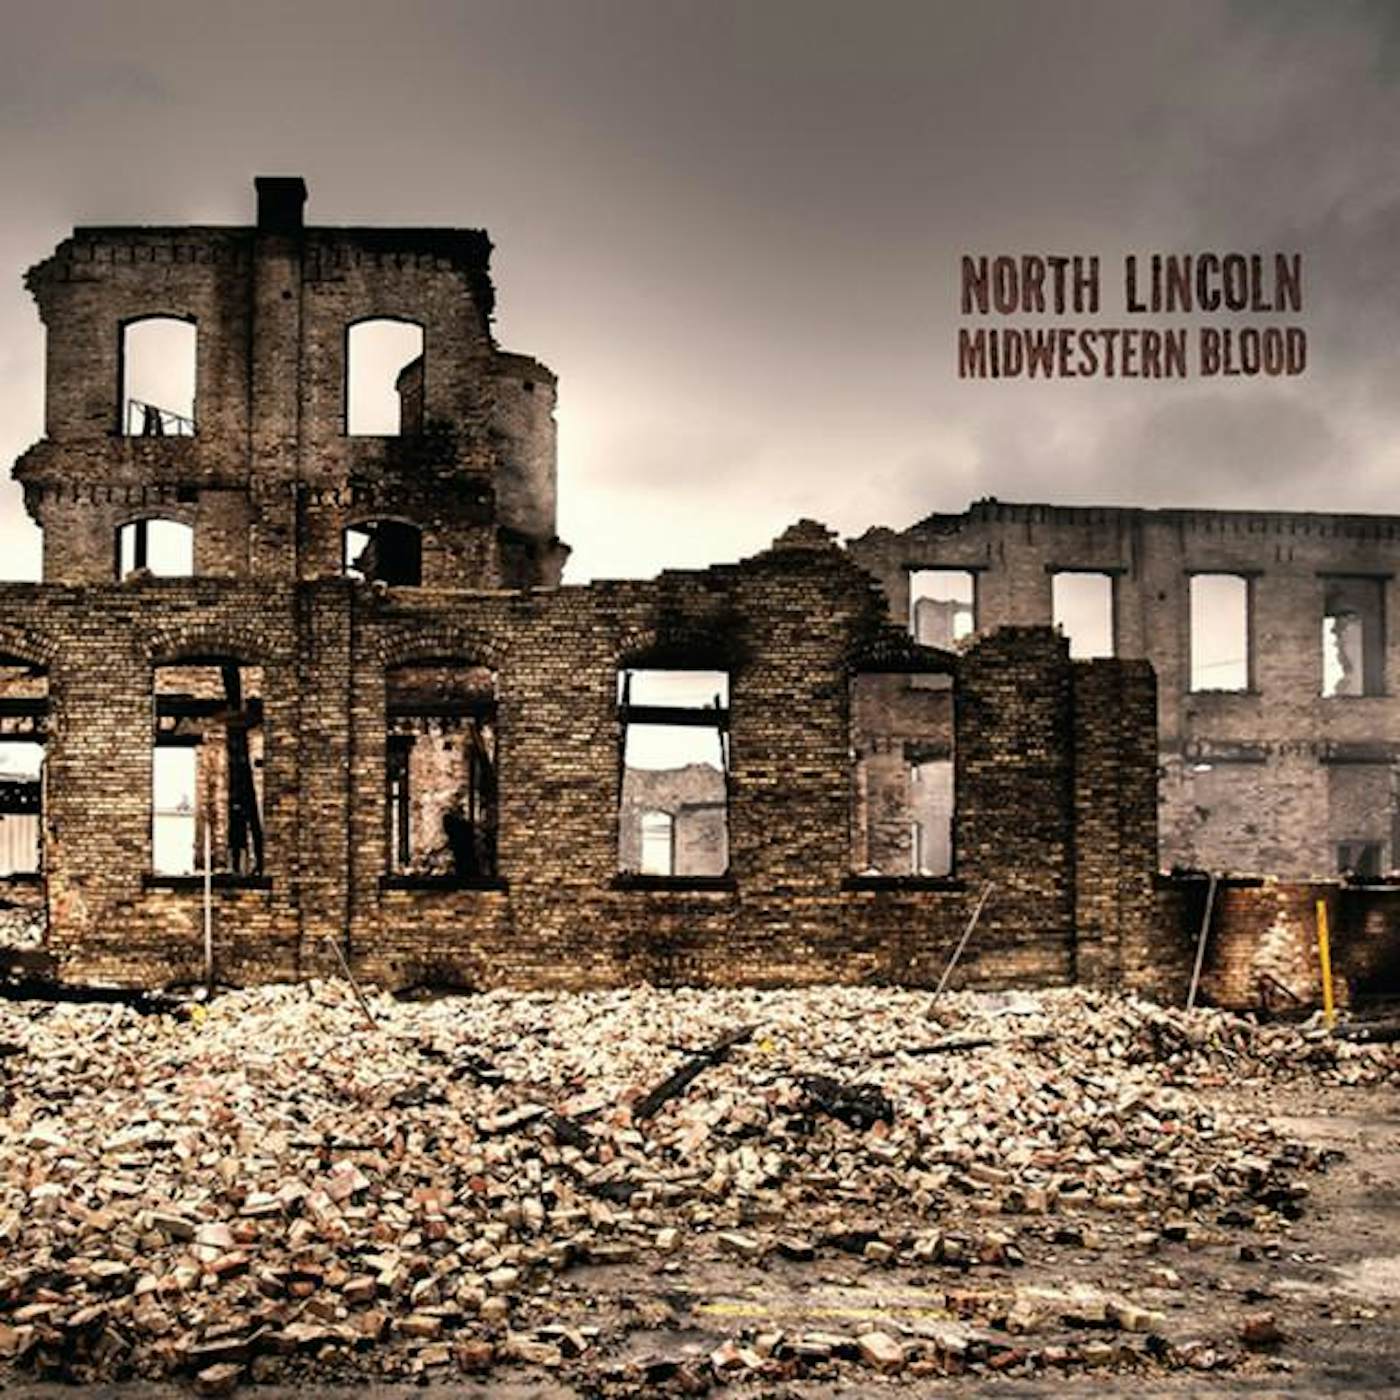 North Lincoln